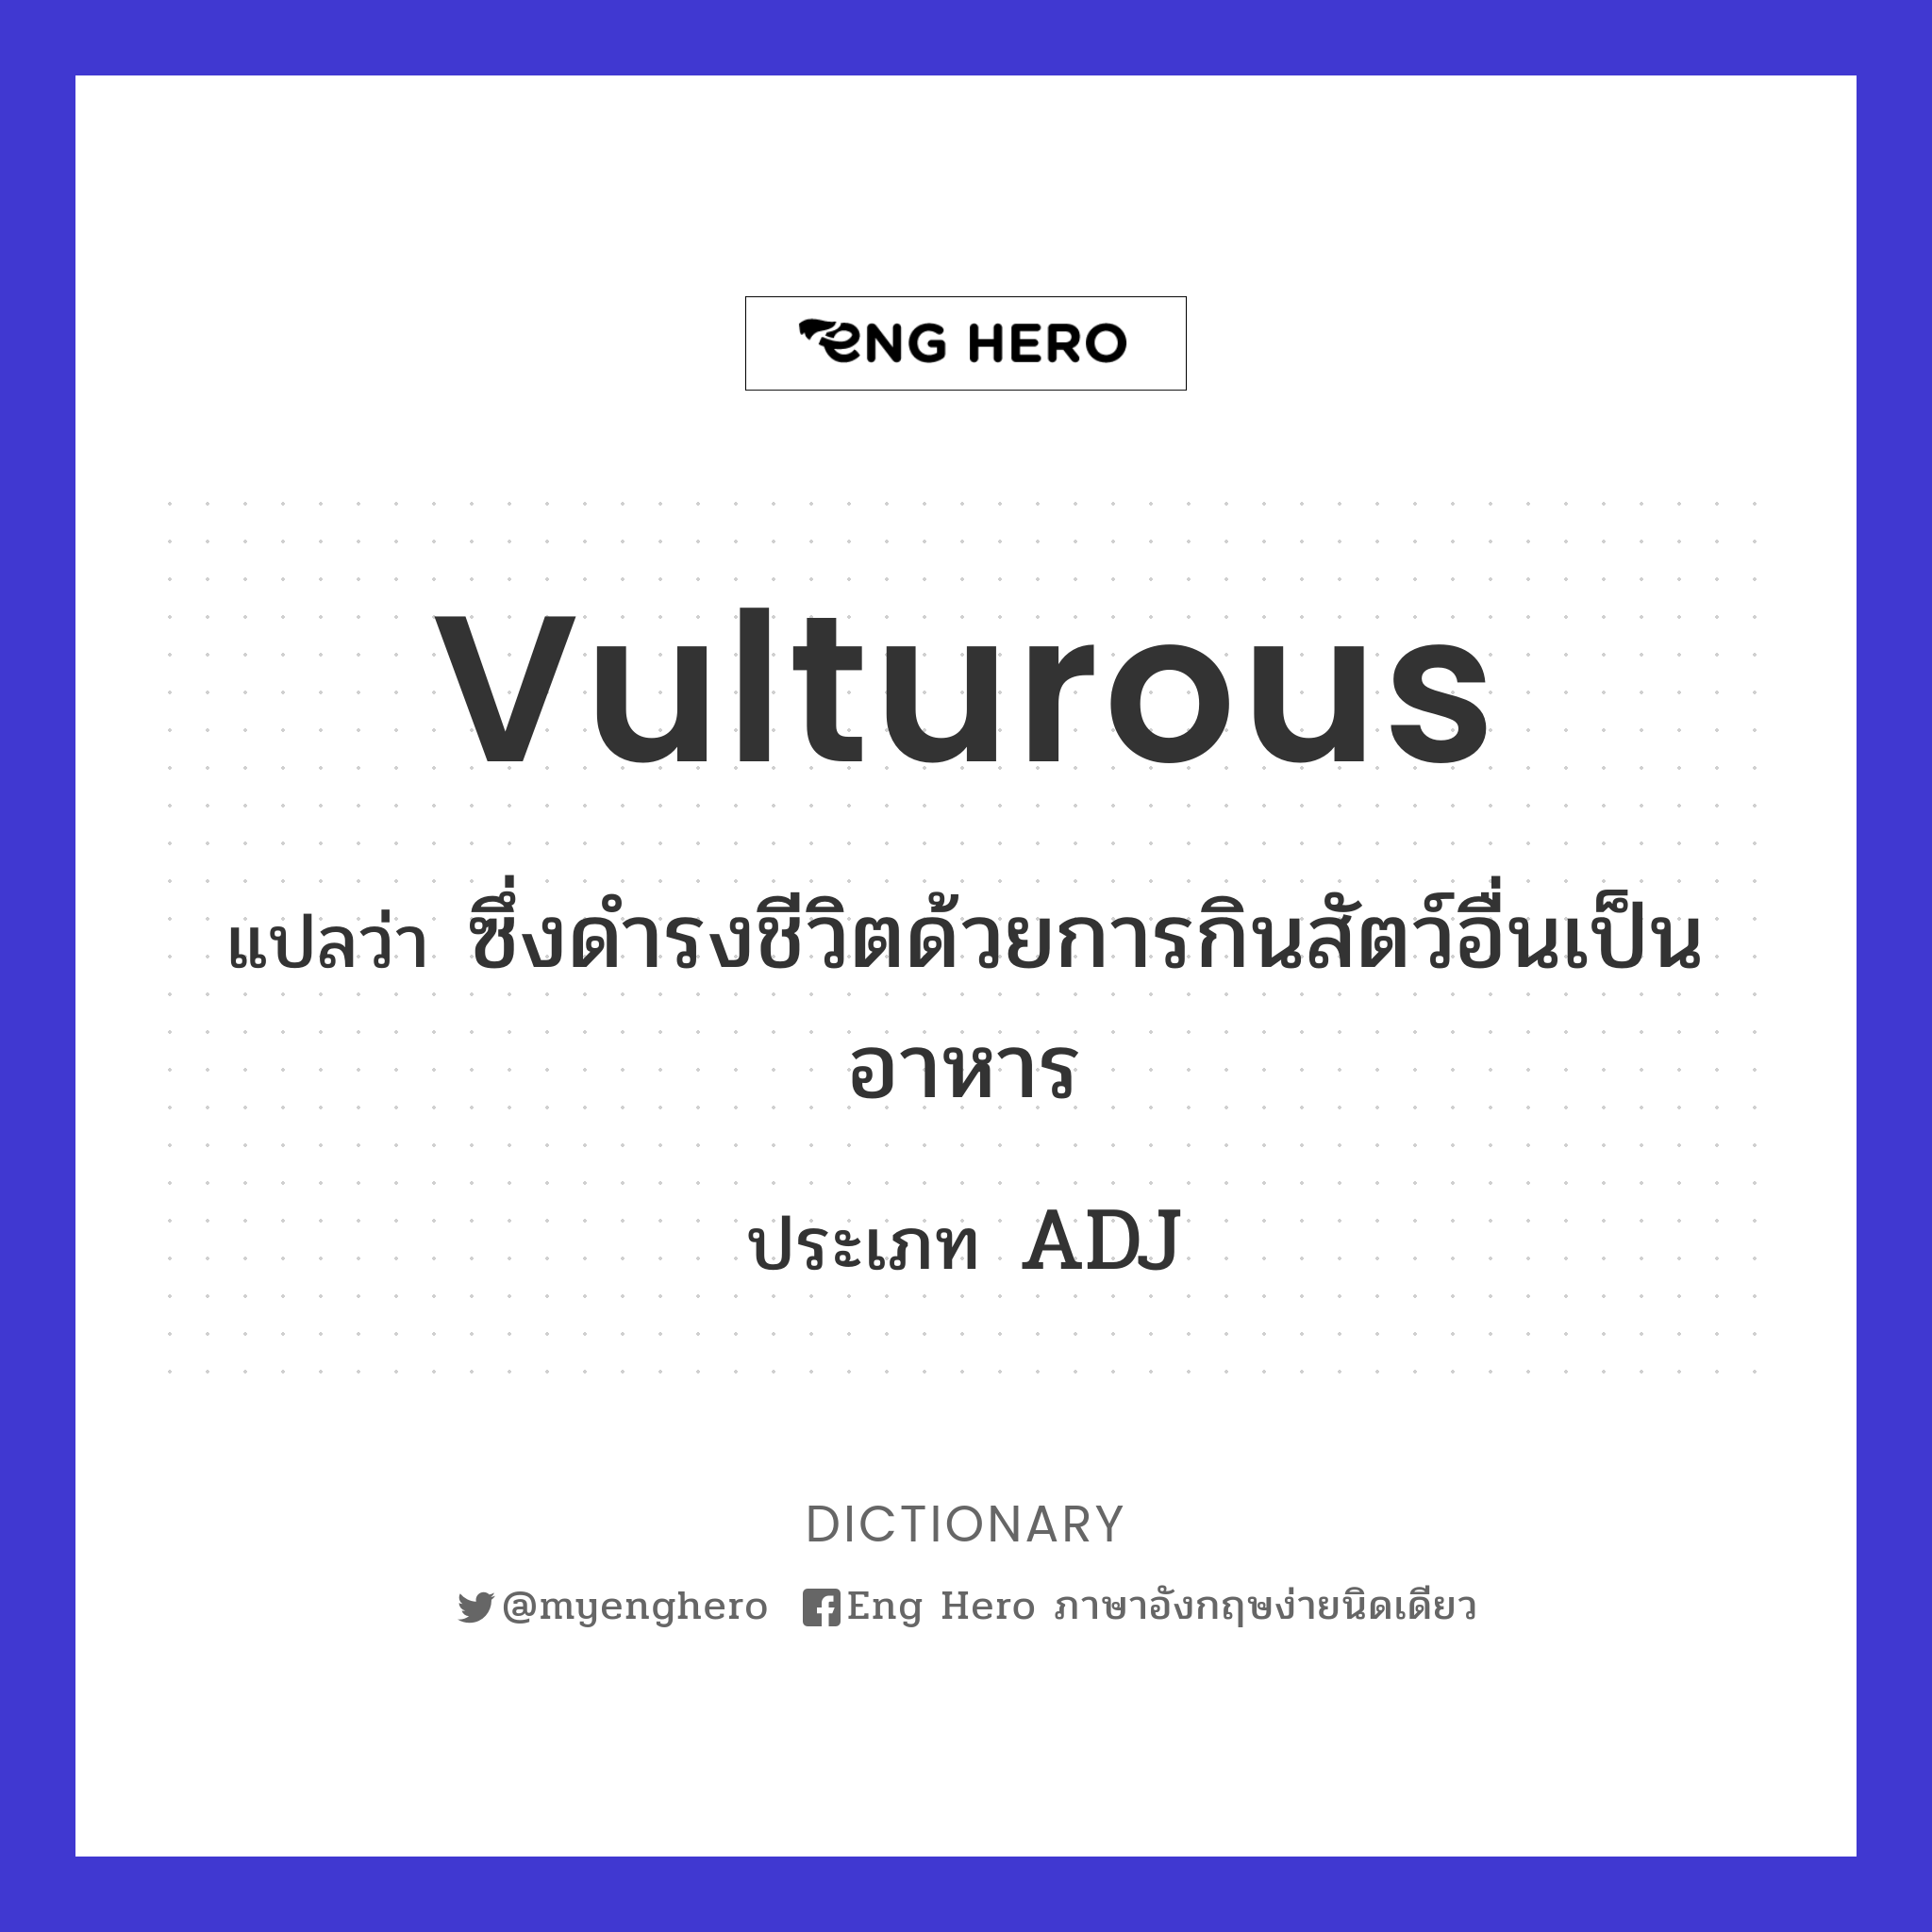 vulturous